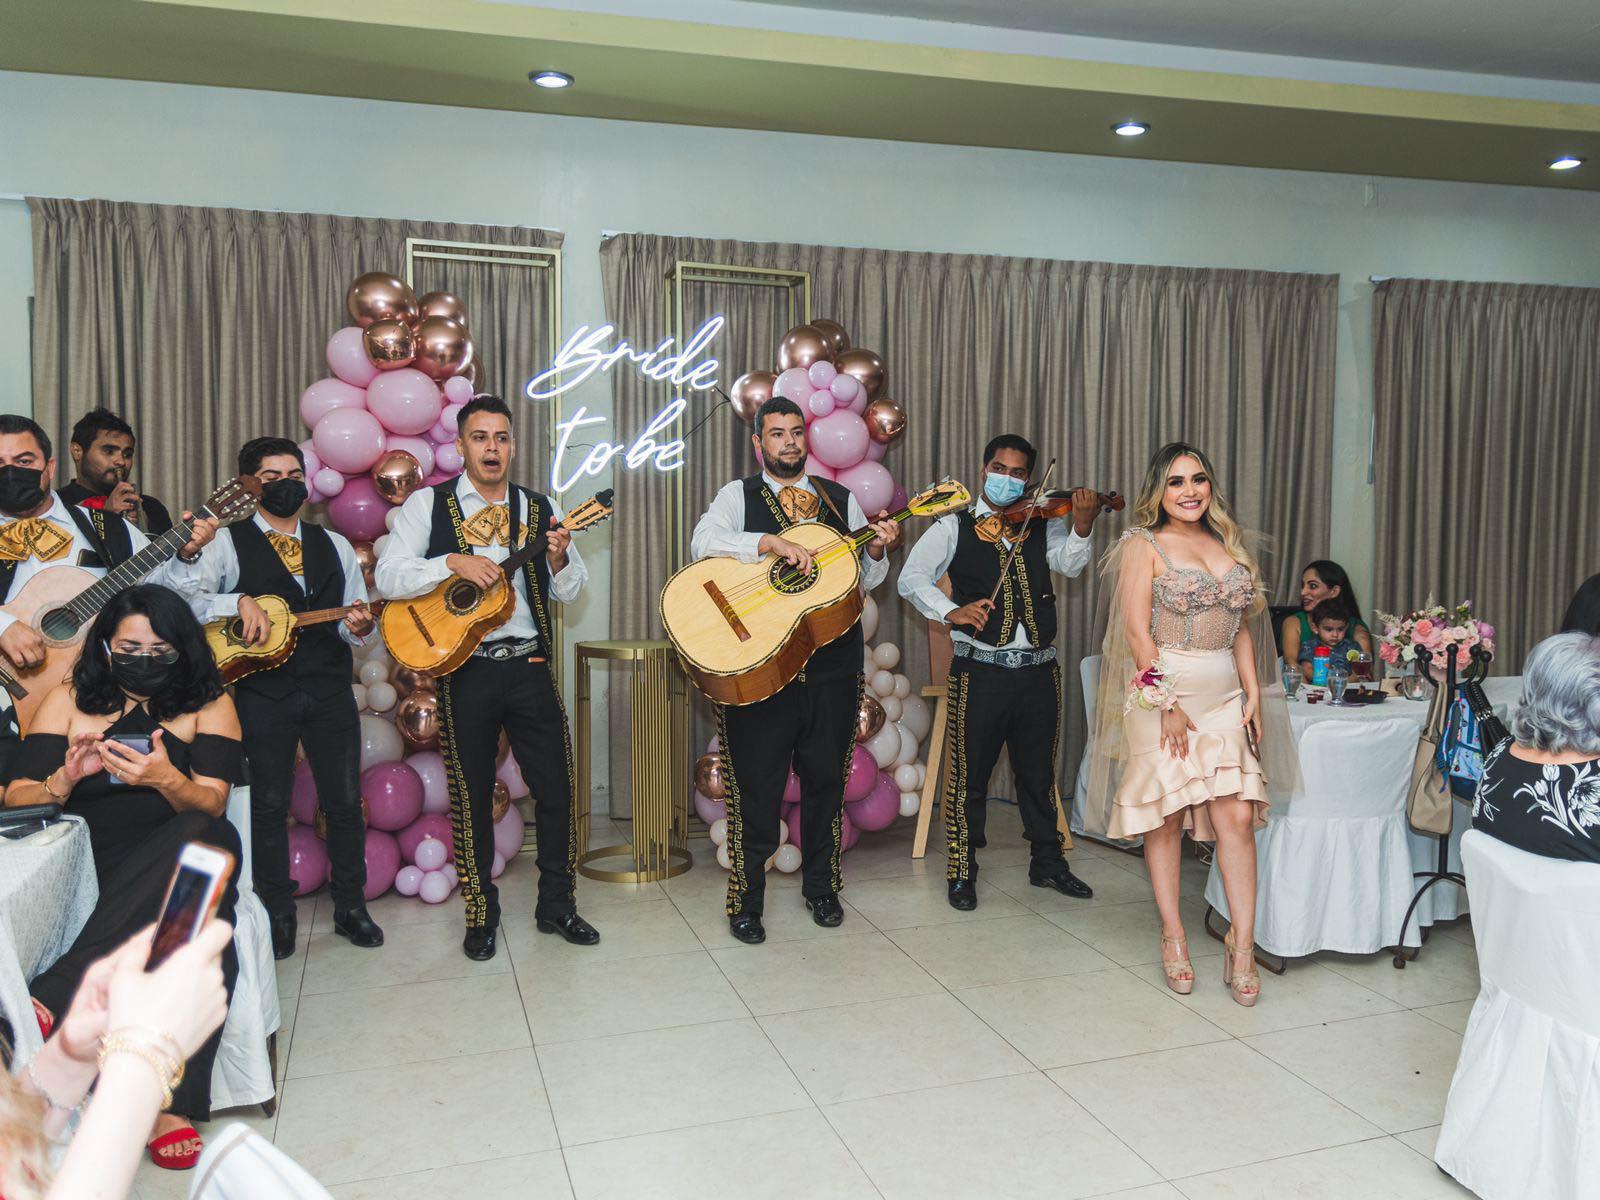 $!En el prenupcial, la novia y sus invitados disfrutaron de la música de un Mariachis.